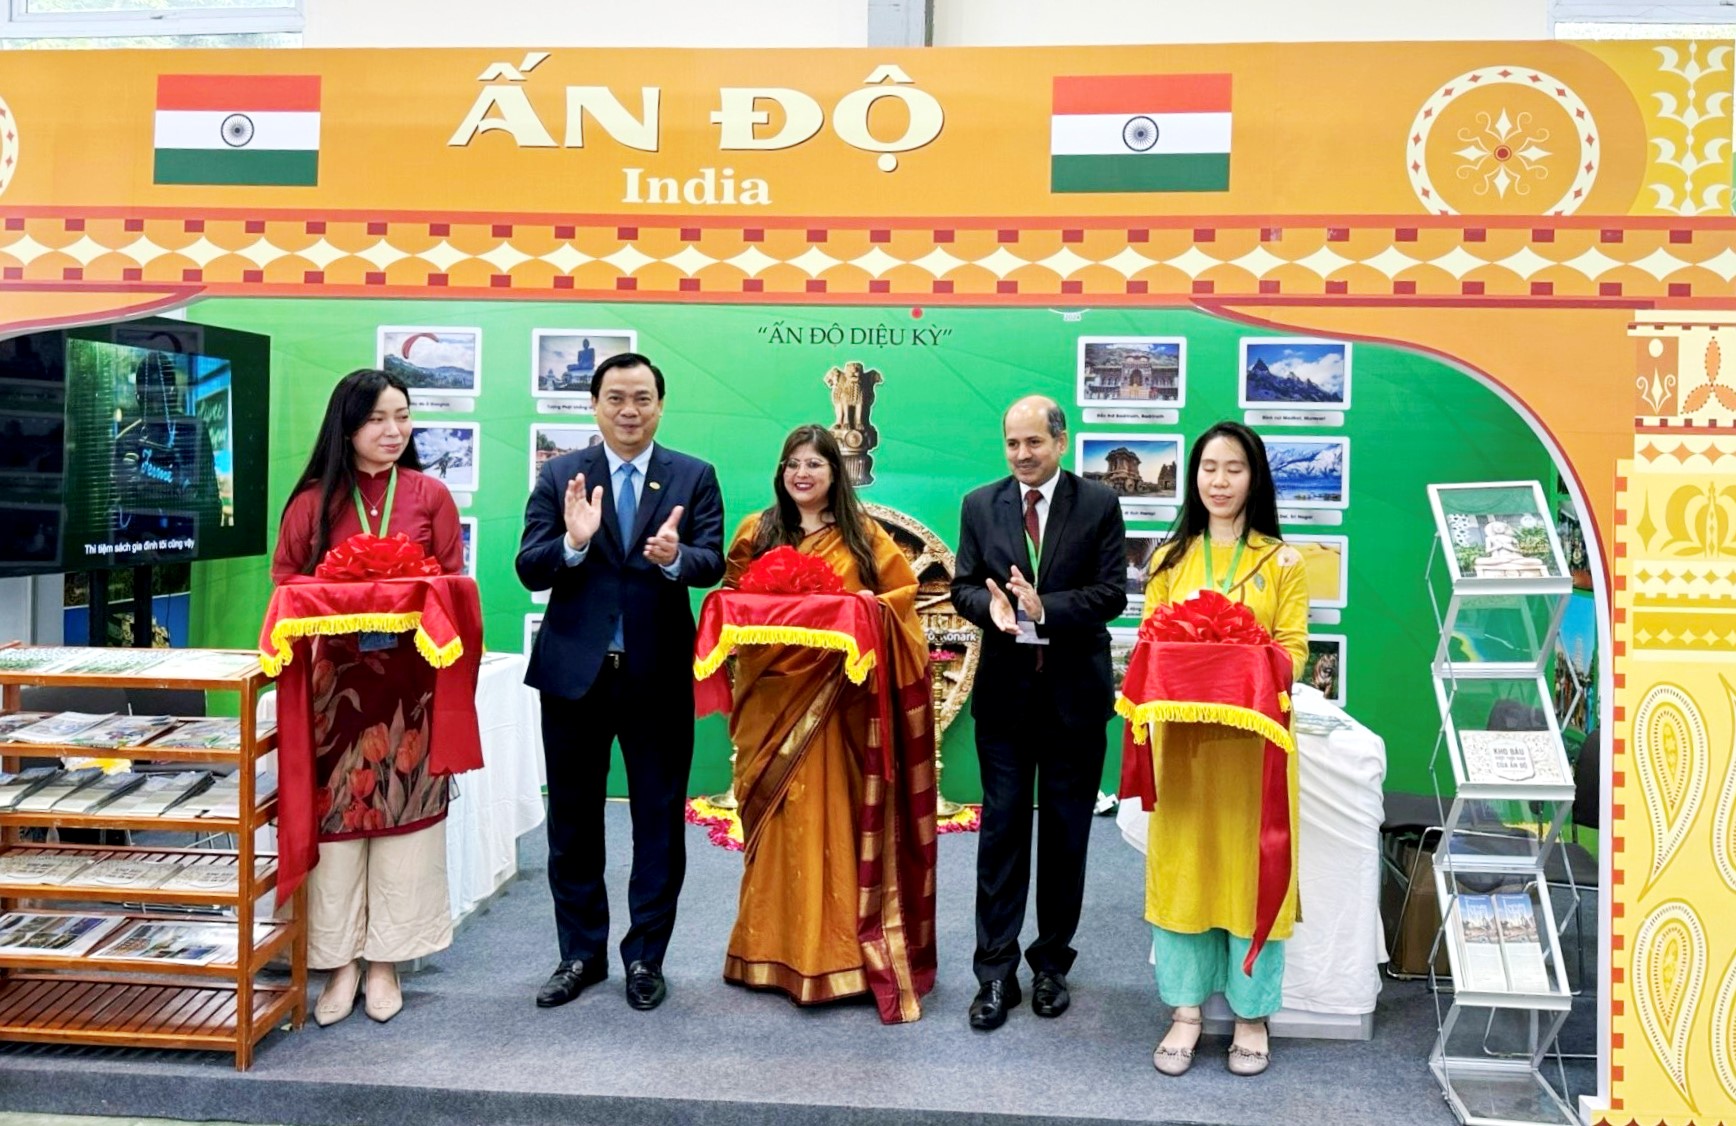 Cục trưởng Cục Du lịch quốc gia Việt Nam Nguyễn Trùng Khánh cắt băng khai trương gian hàng Ấn Độ